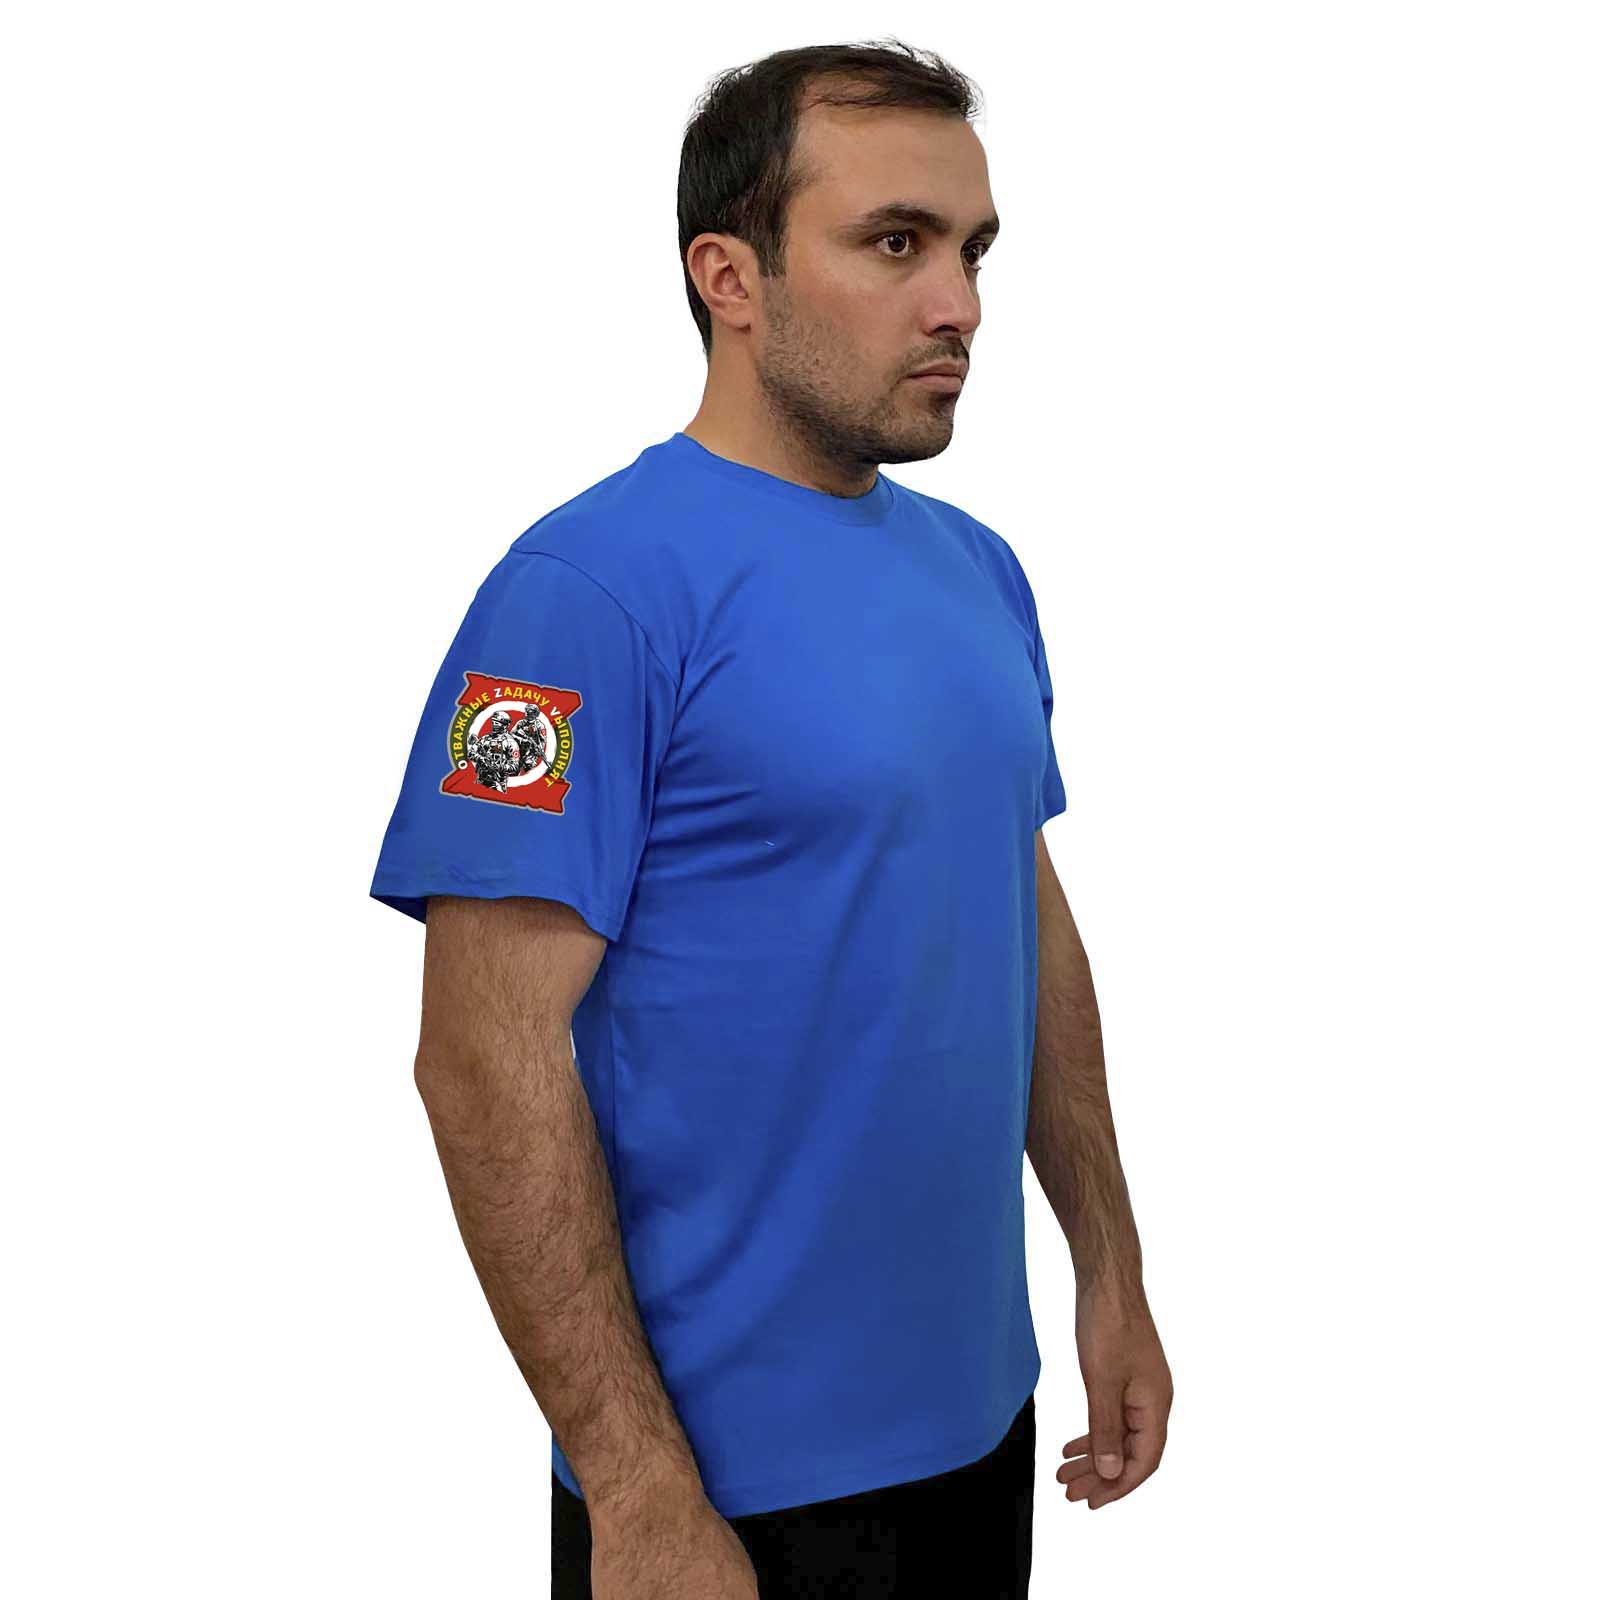 Васильковая футболка с термотрансфером "Отважные Zадачу Vыполнят" на рукаве